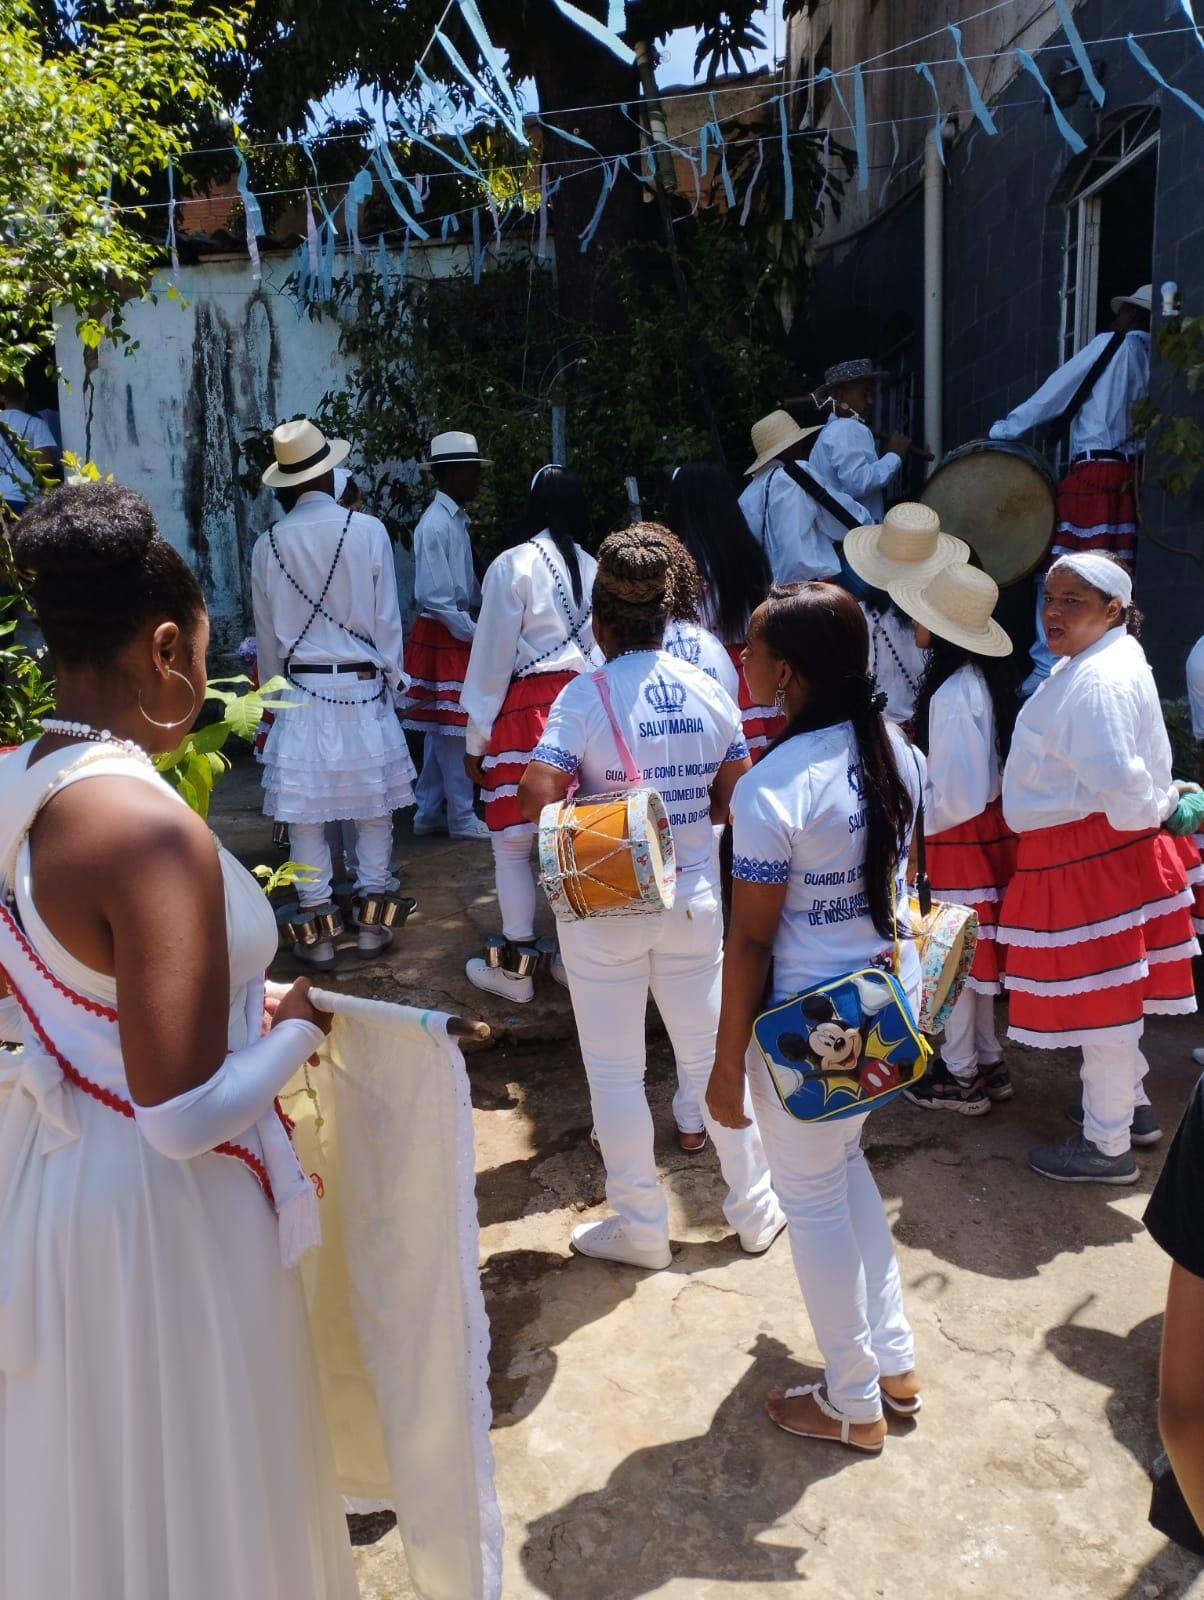 Festa Grande ocorre no bairro Concórdia, na região Leste de Belo Horizonte e é organizada por um dos reinados mais tradicionais da capital - a guarda São Jorge Nossa Senhora do Rosário